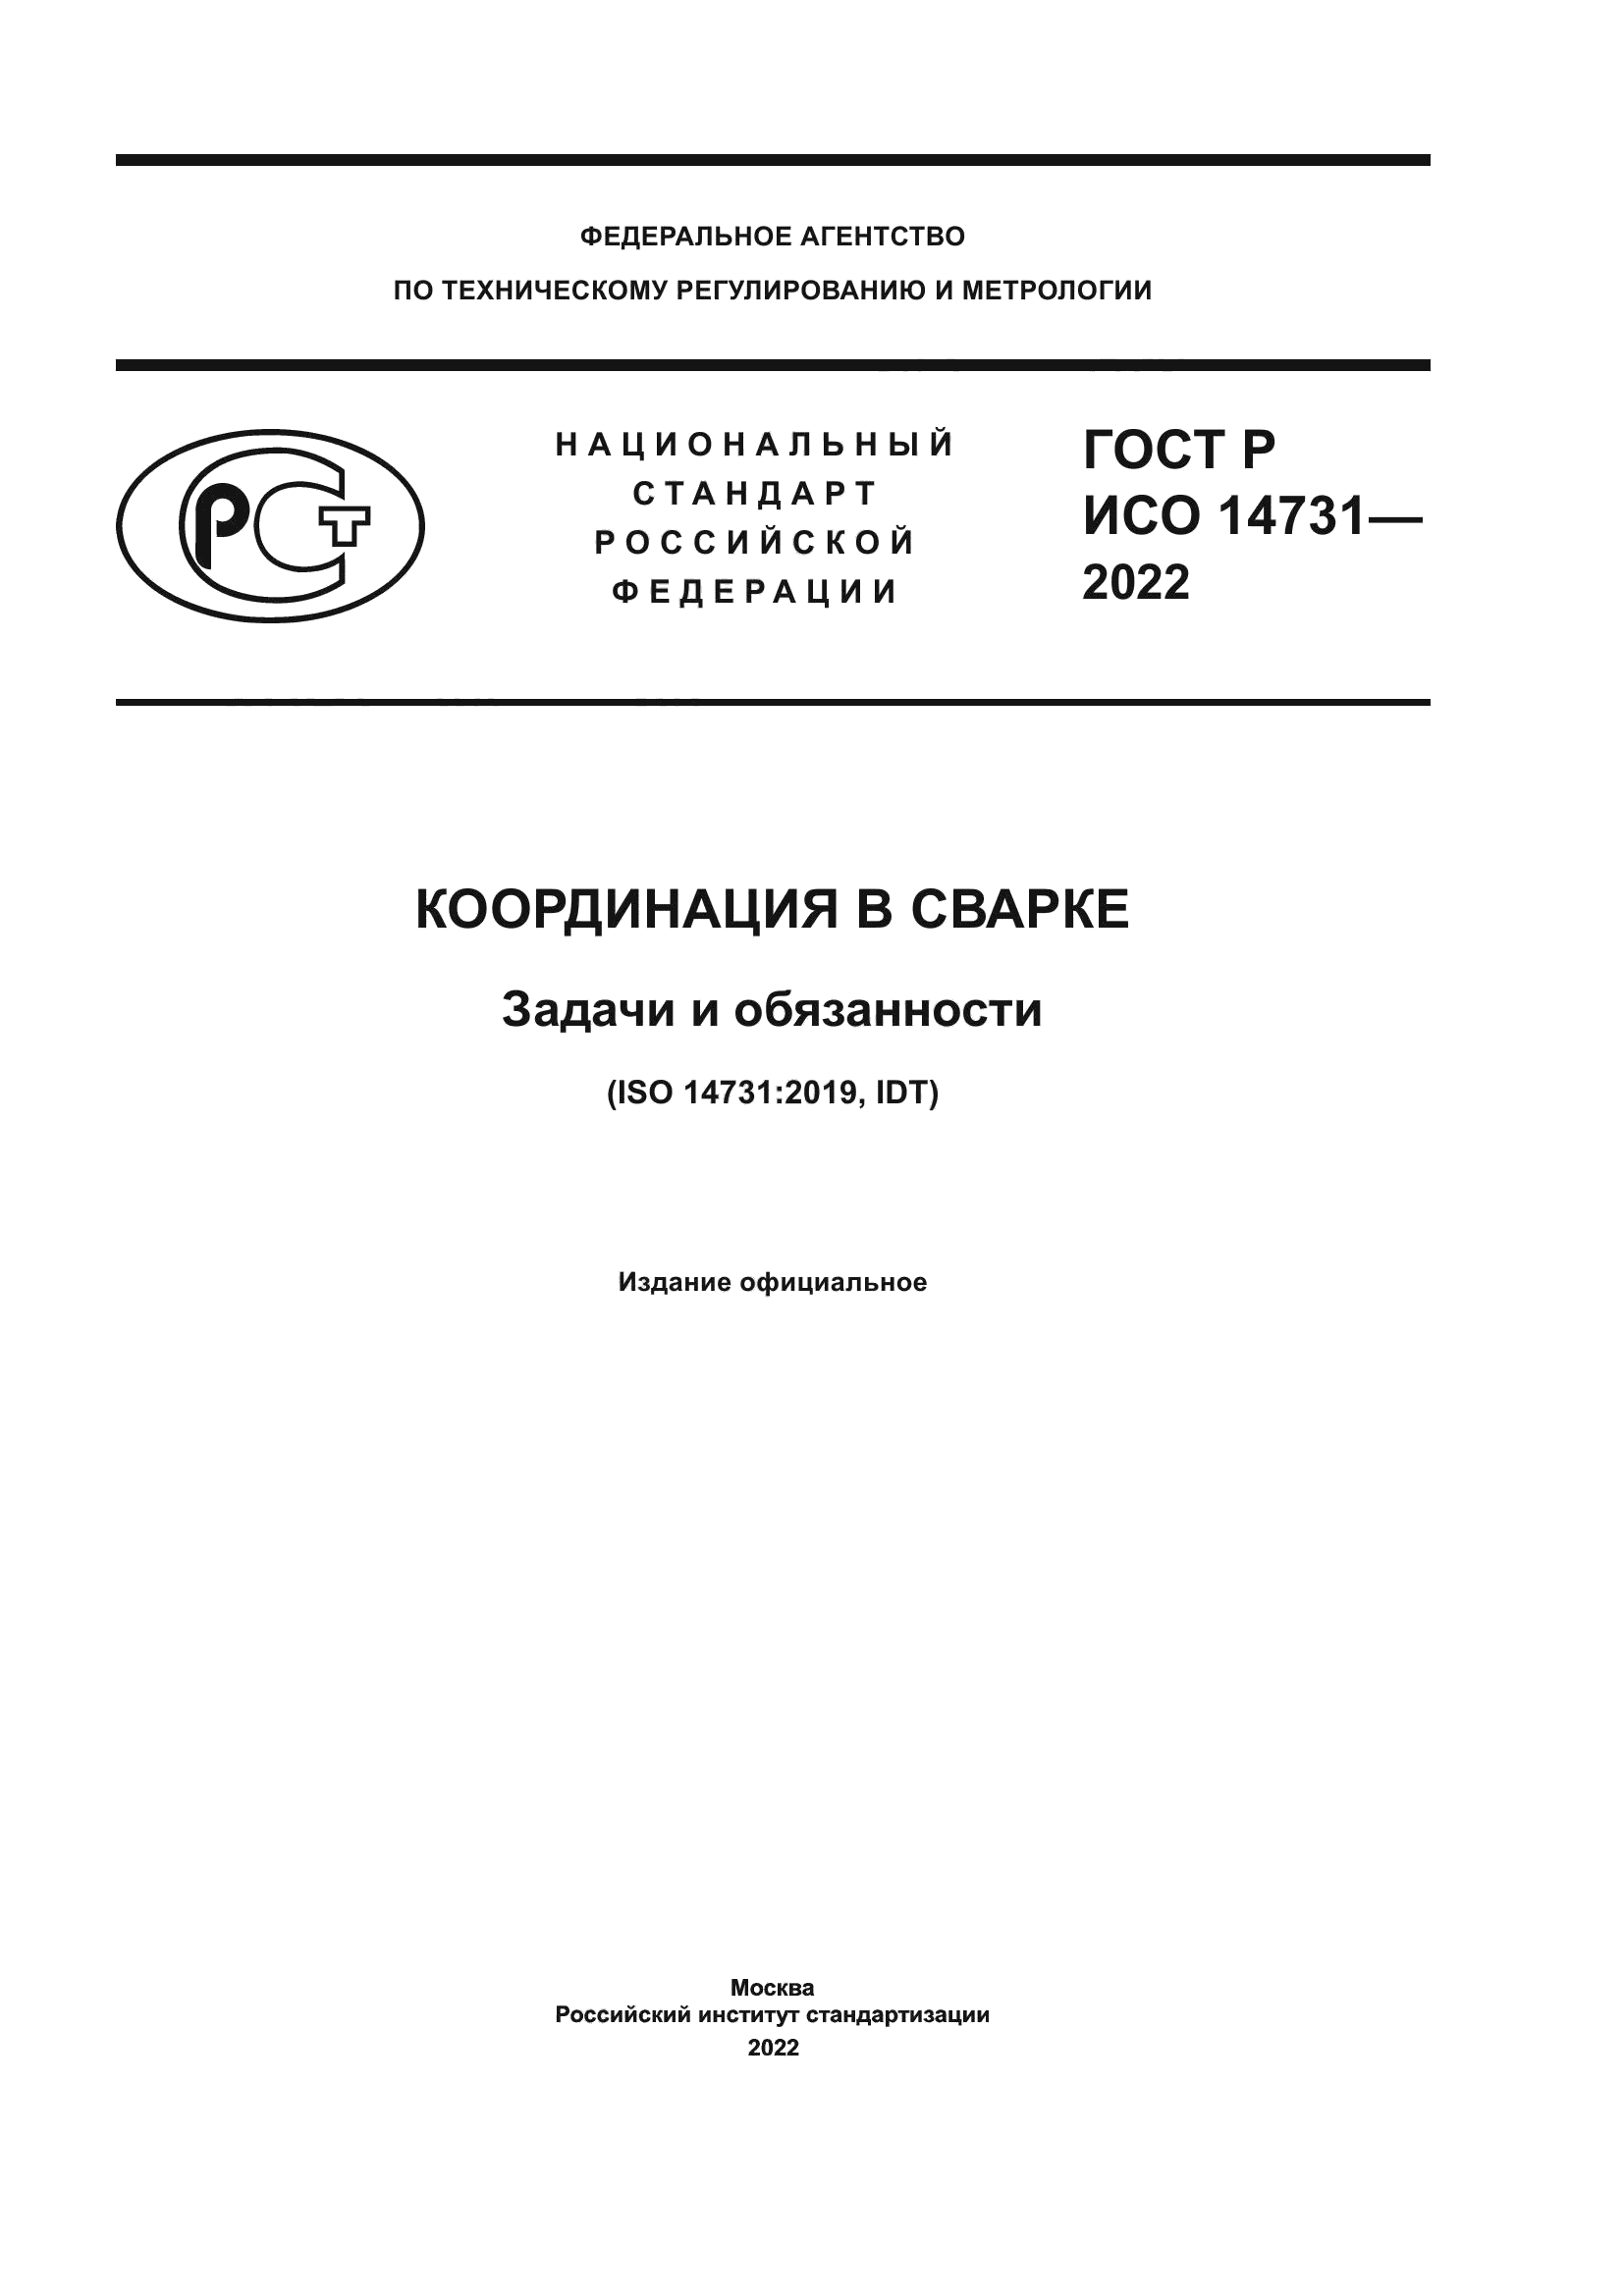 ГОСТ Р ИСО 14731-2022